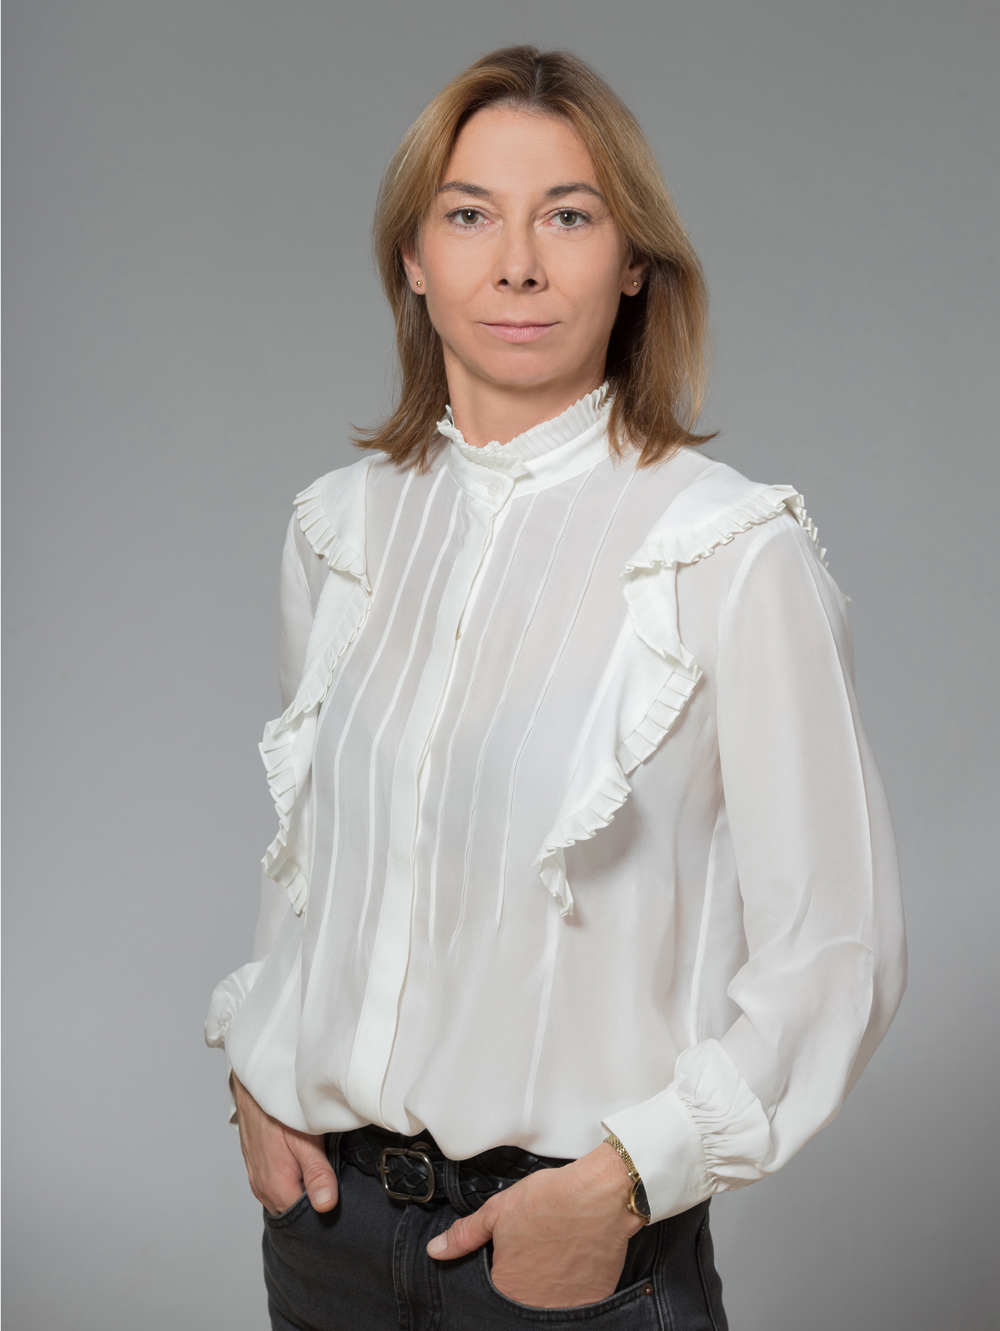 Paulina Łojko-Wojtyniak